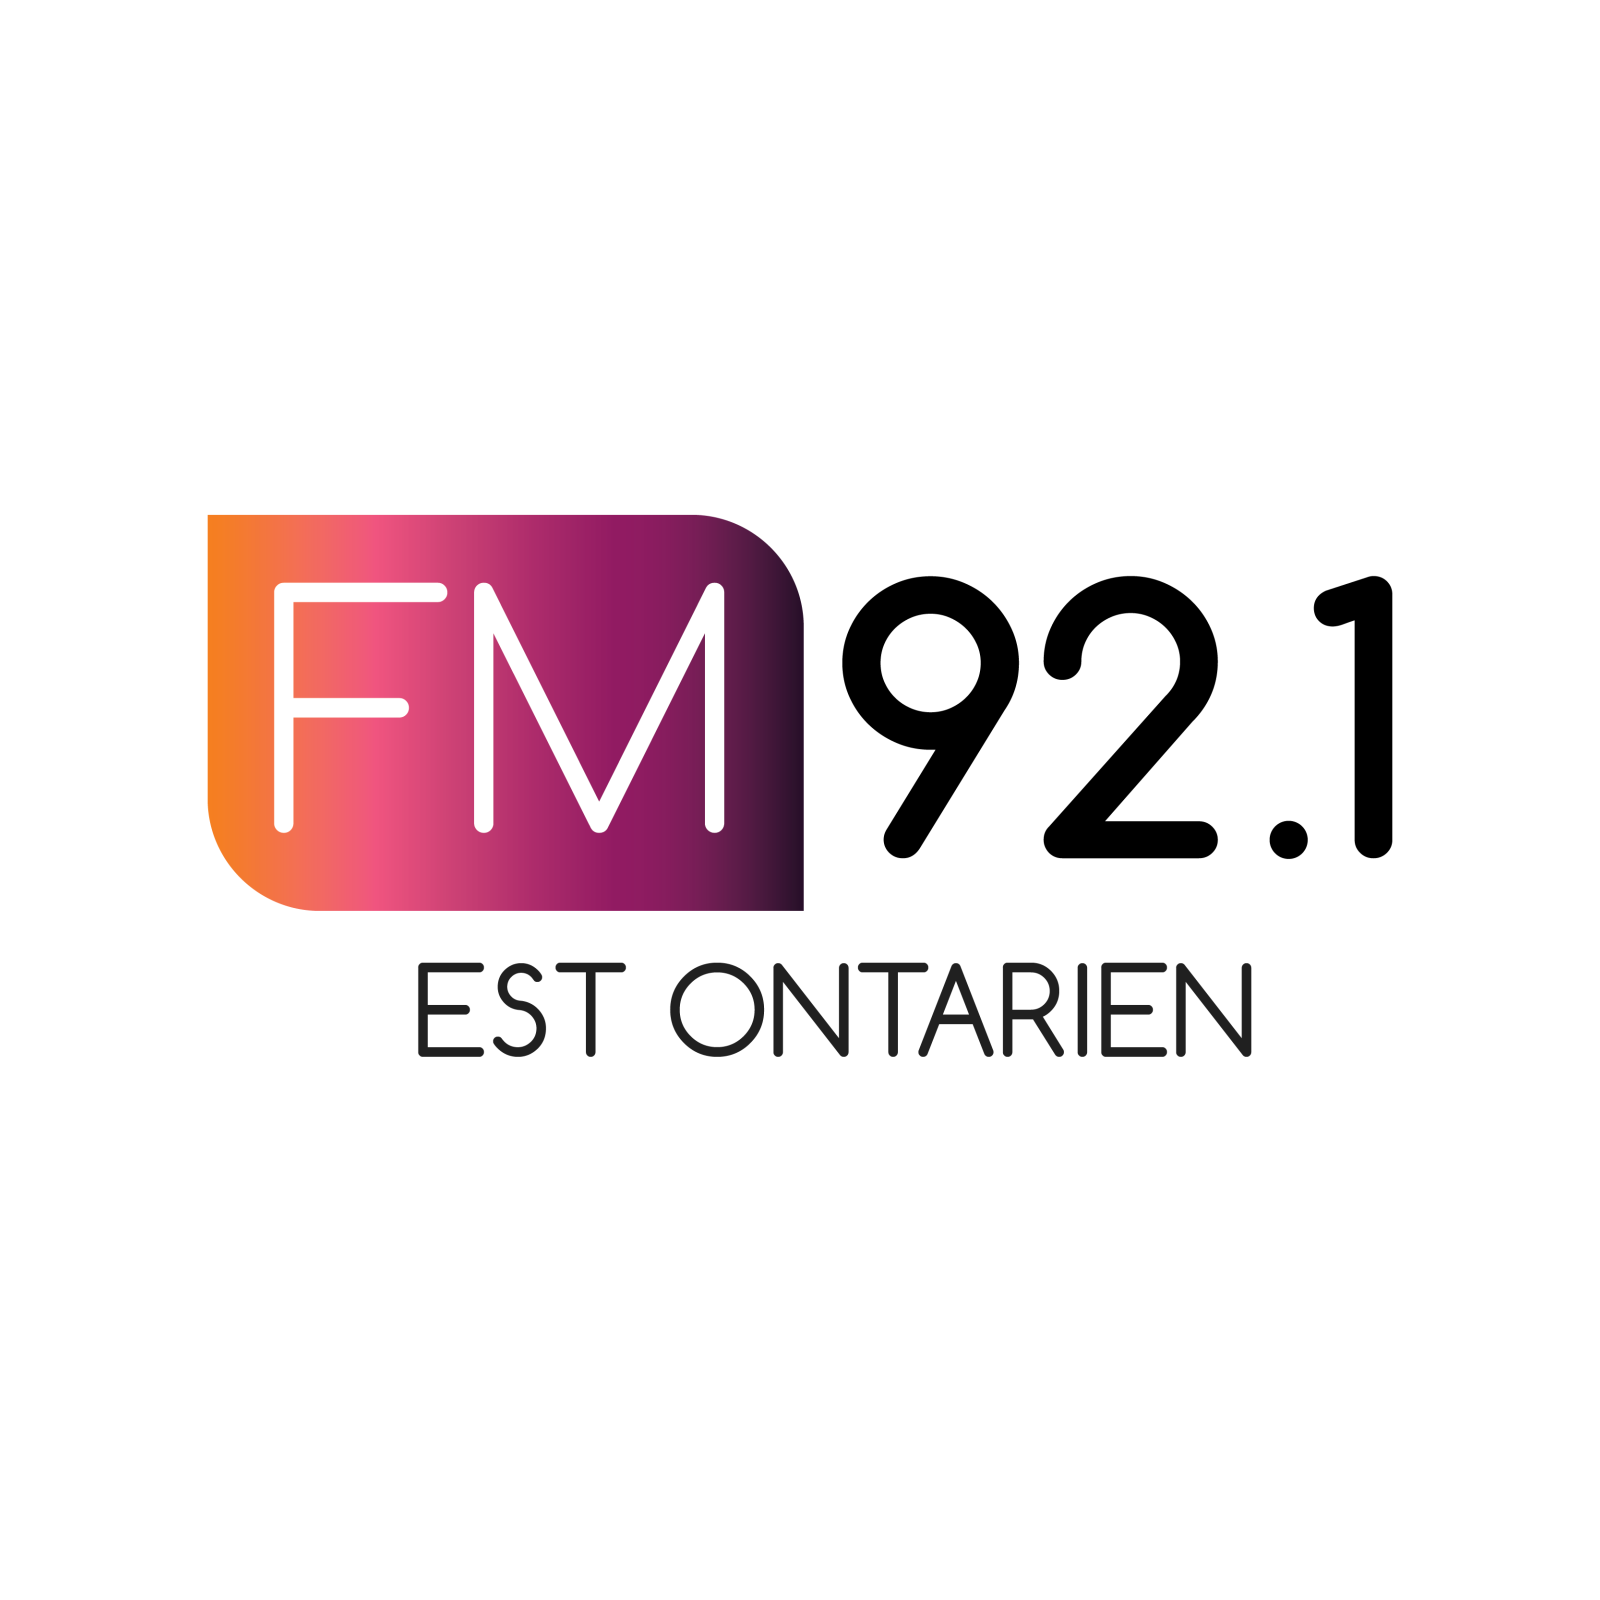 FM 92.1